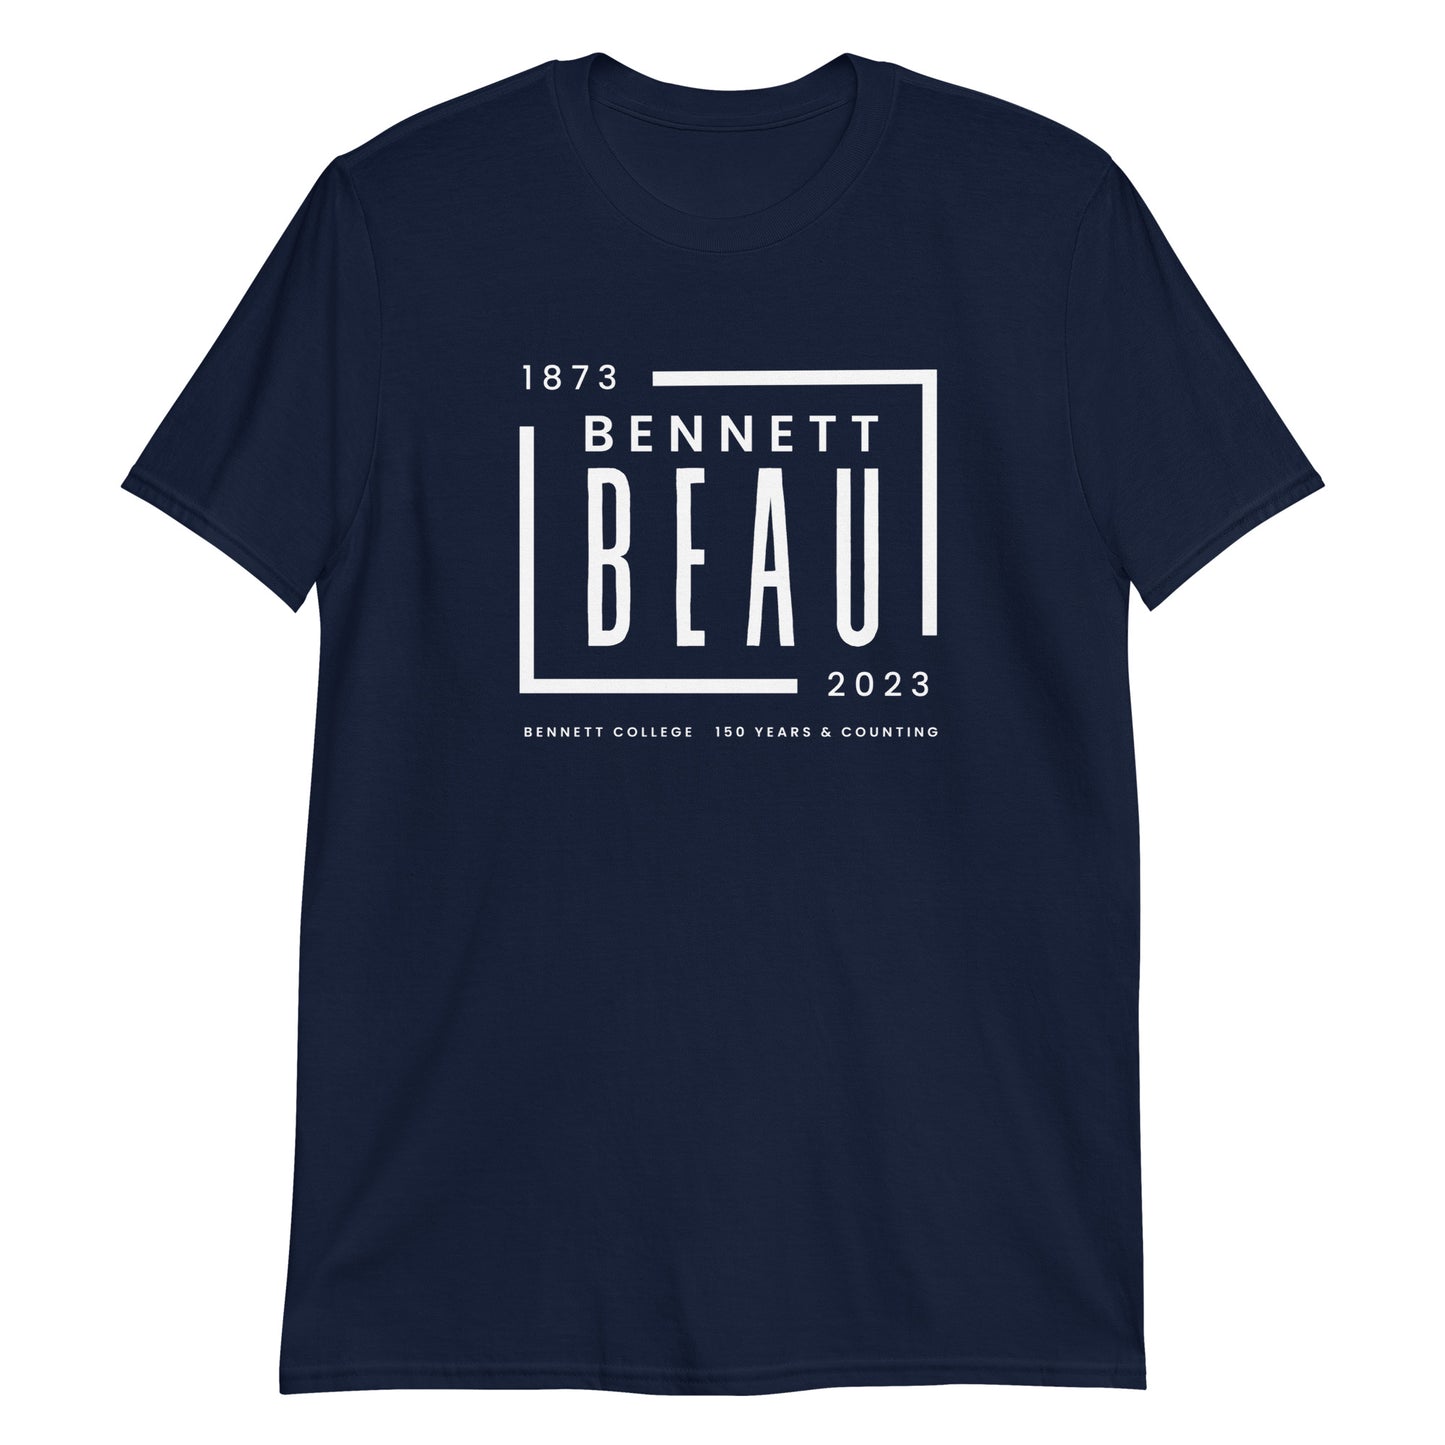 Bennett Beau Short-Sleeve Unisex T-Shirt